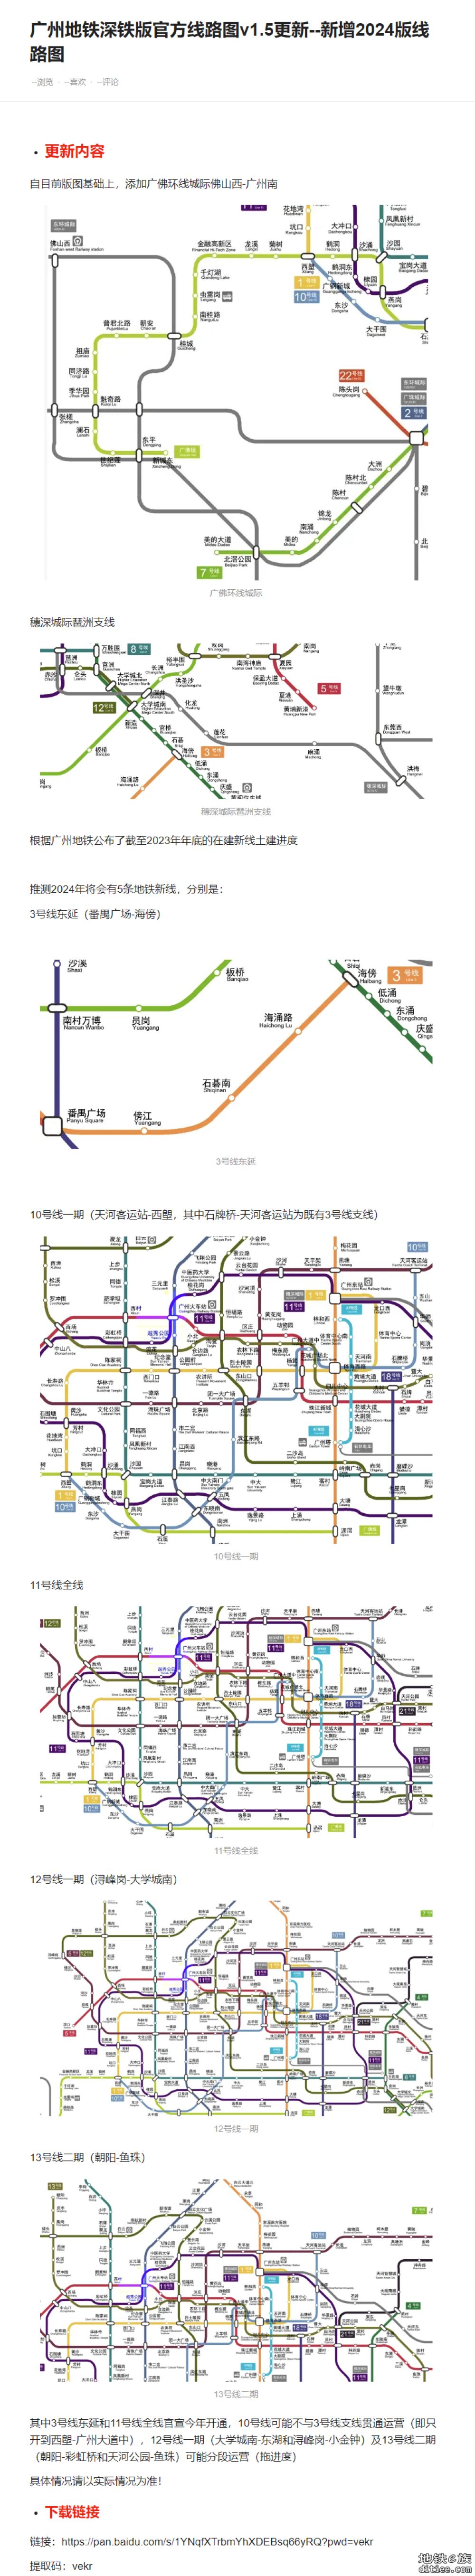 广州地铁变形线路图，但是模仿深铁官方风格